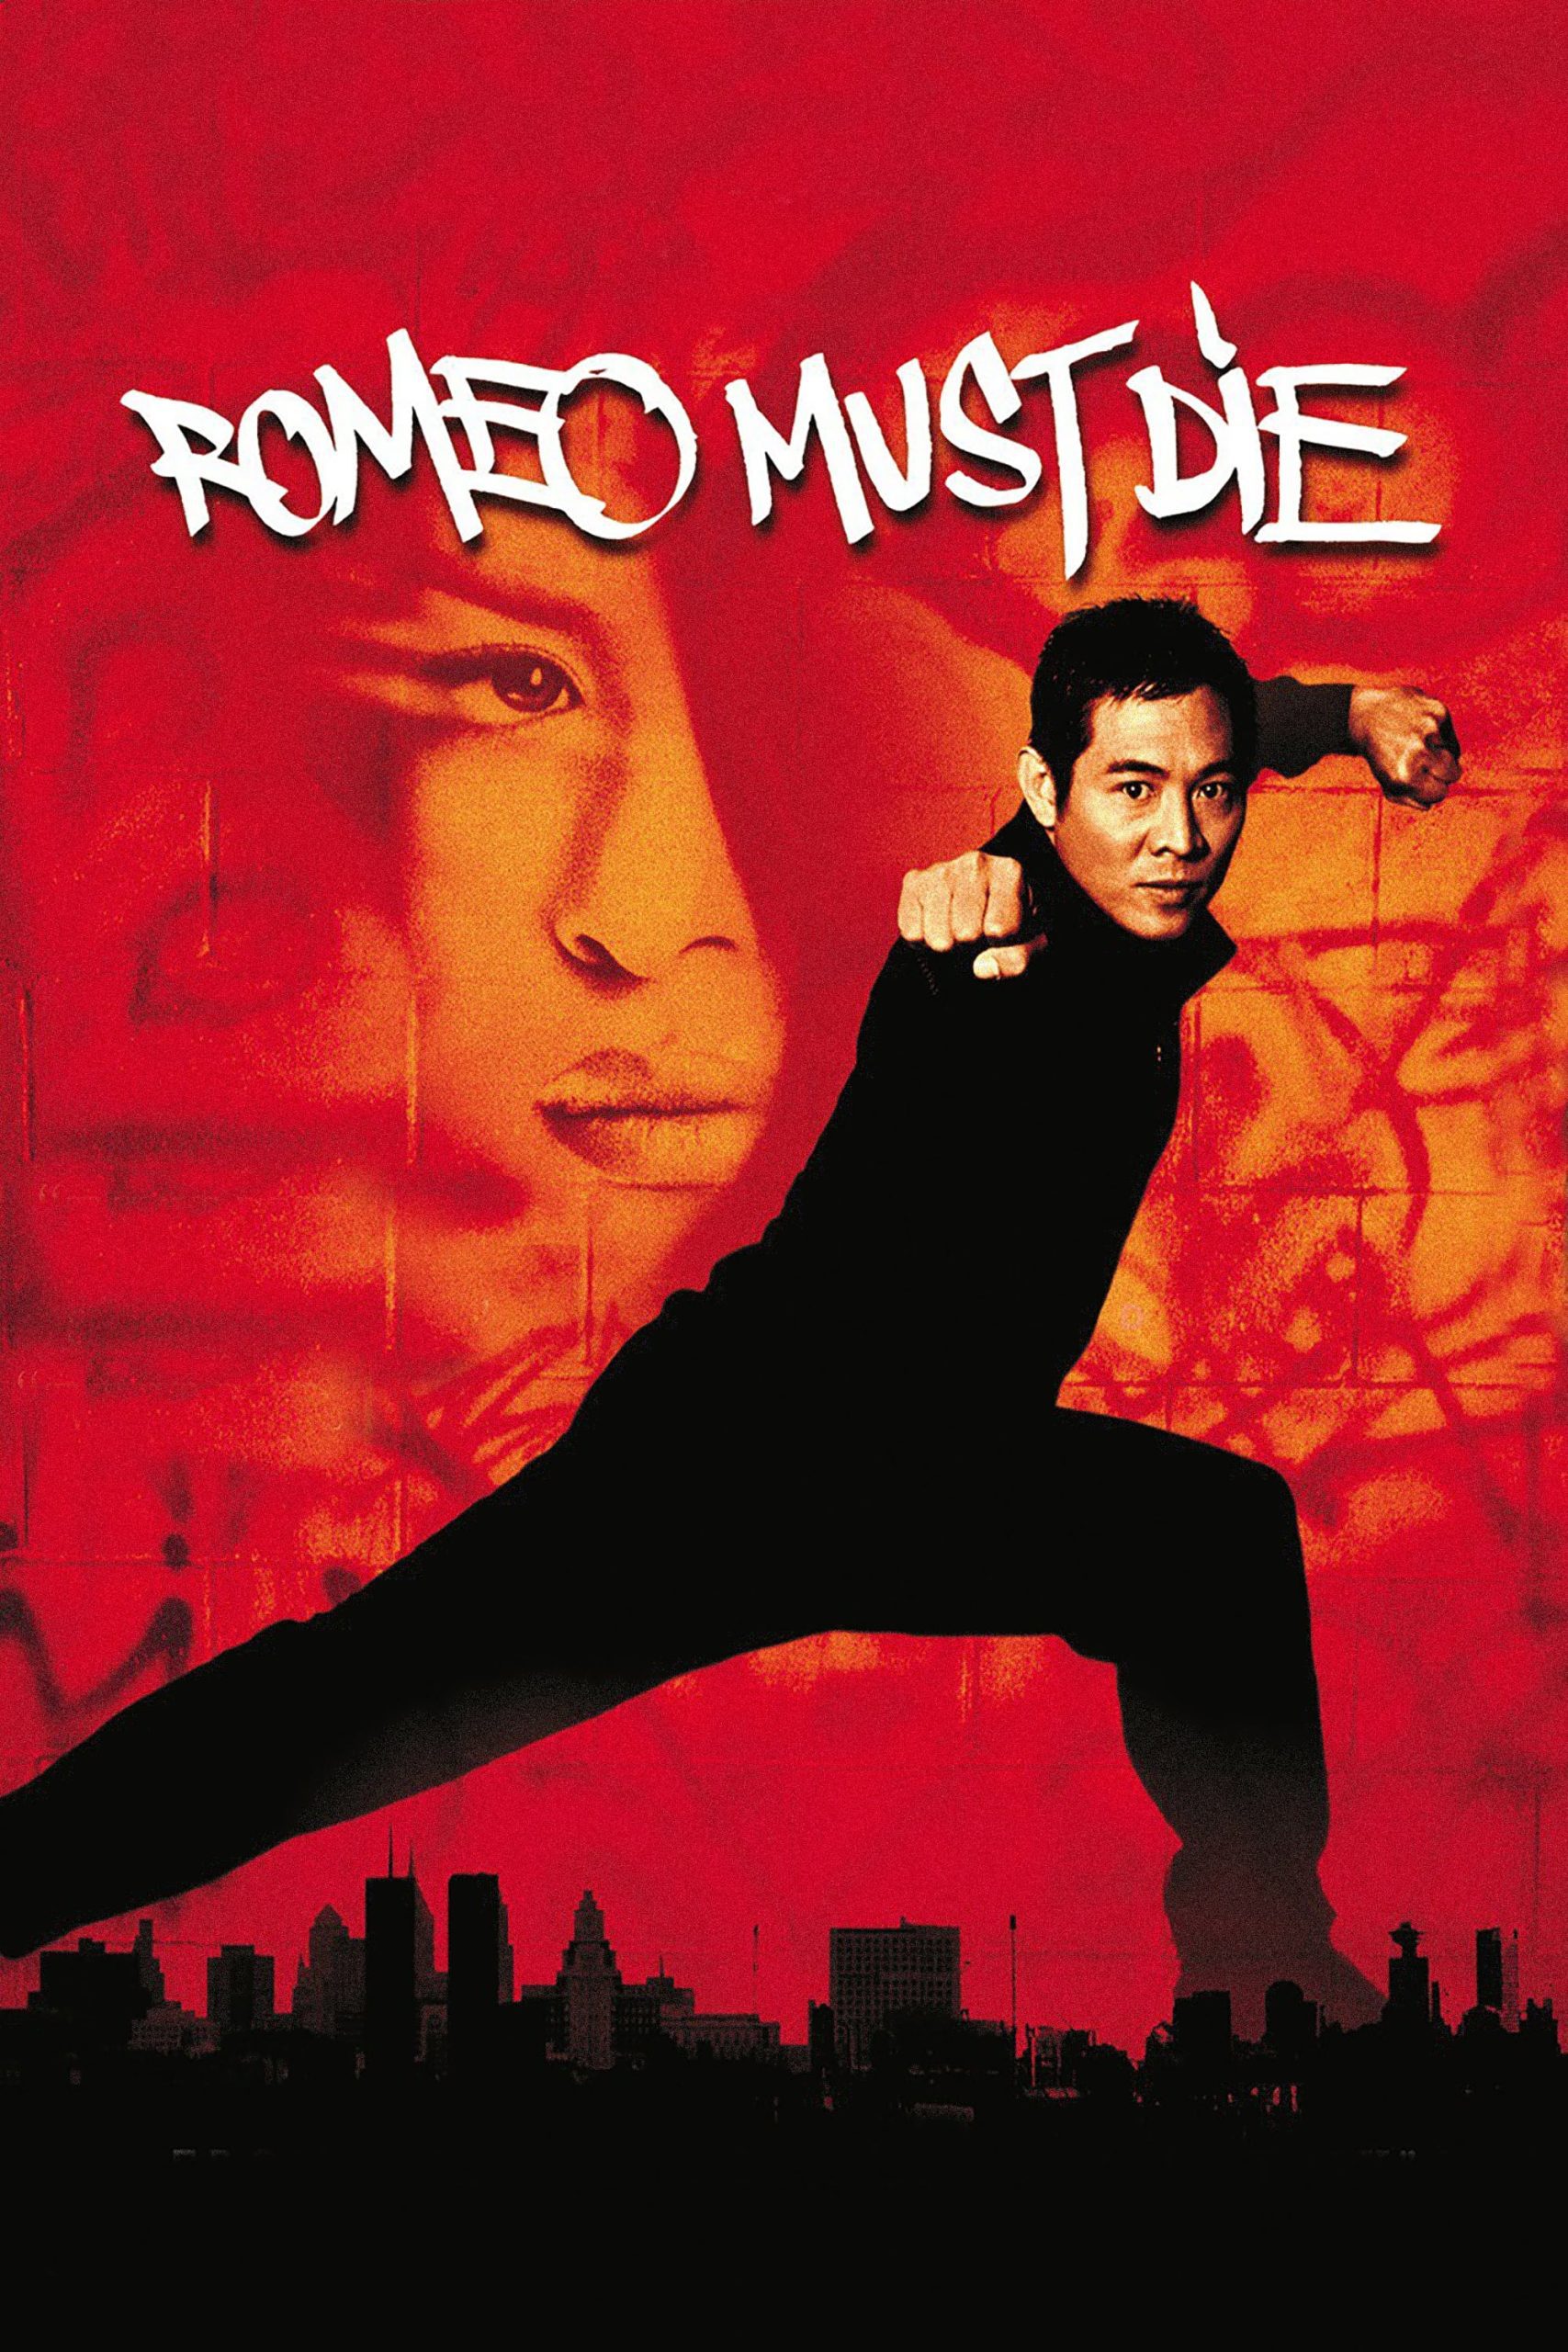 ดูหนังออนไลน์ฟรี Romeo Must Die ศึกแก็งค์มังกรผ่าโลก